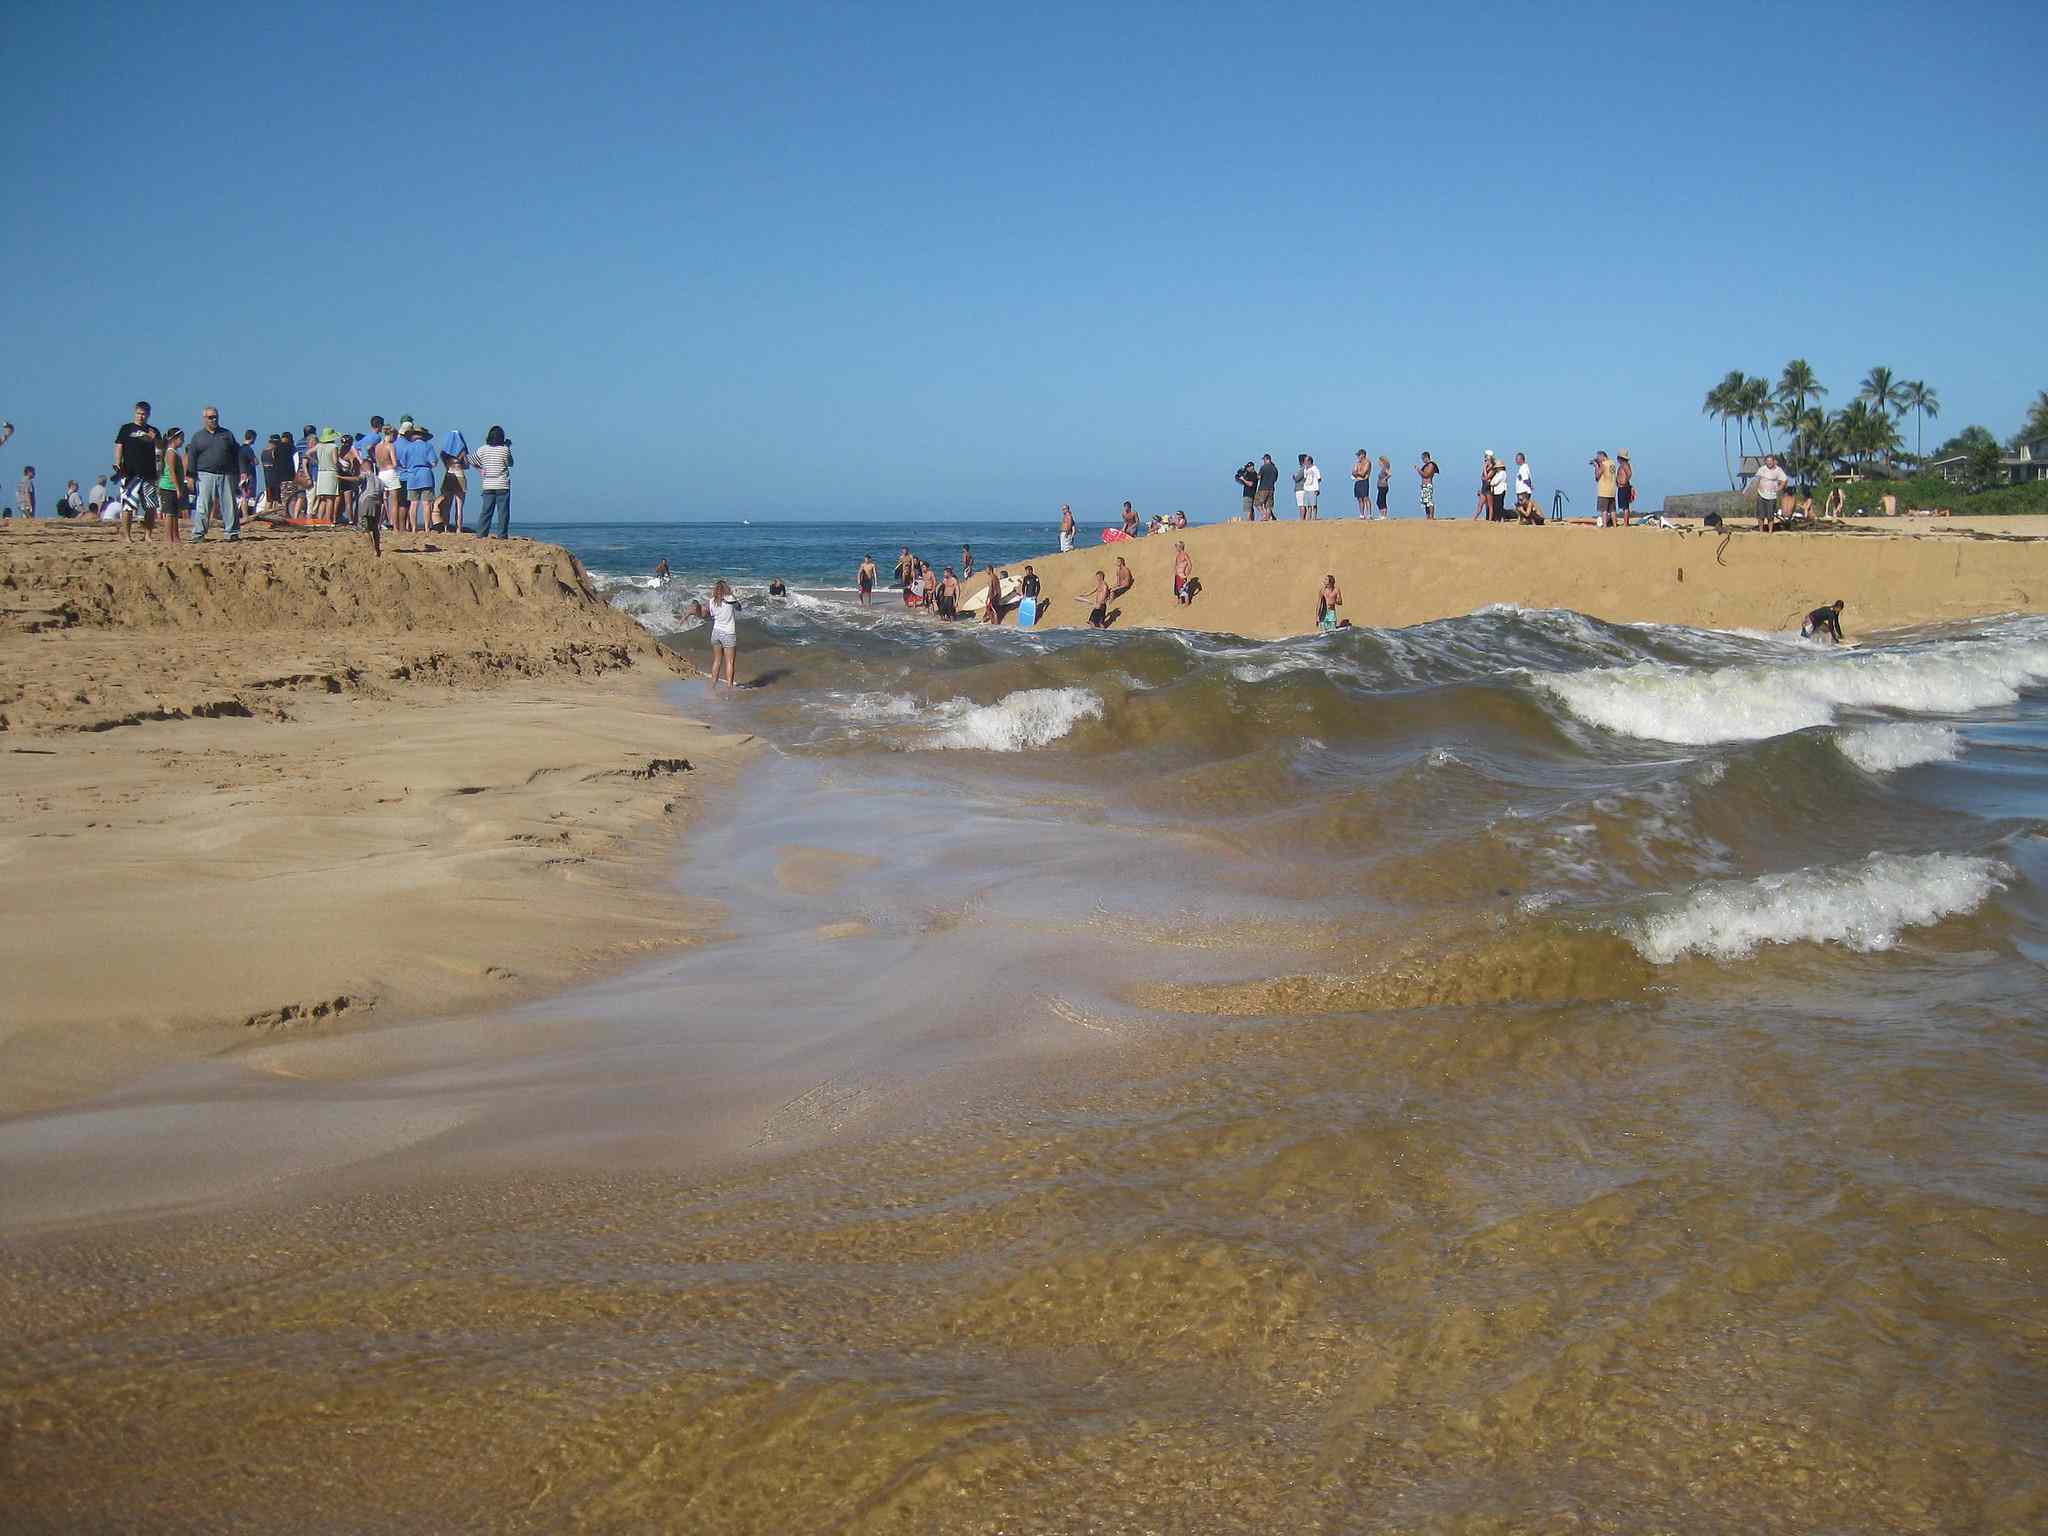 Olas rompiendo en la desembocadura del río Waimea con dunas de arena a ambos lados de las olas repletas de observadores que observan a unos cuantos surfistas en el agua bajo un brillante cielo azul